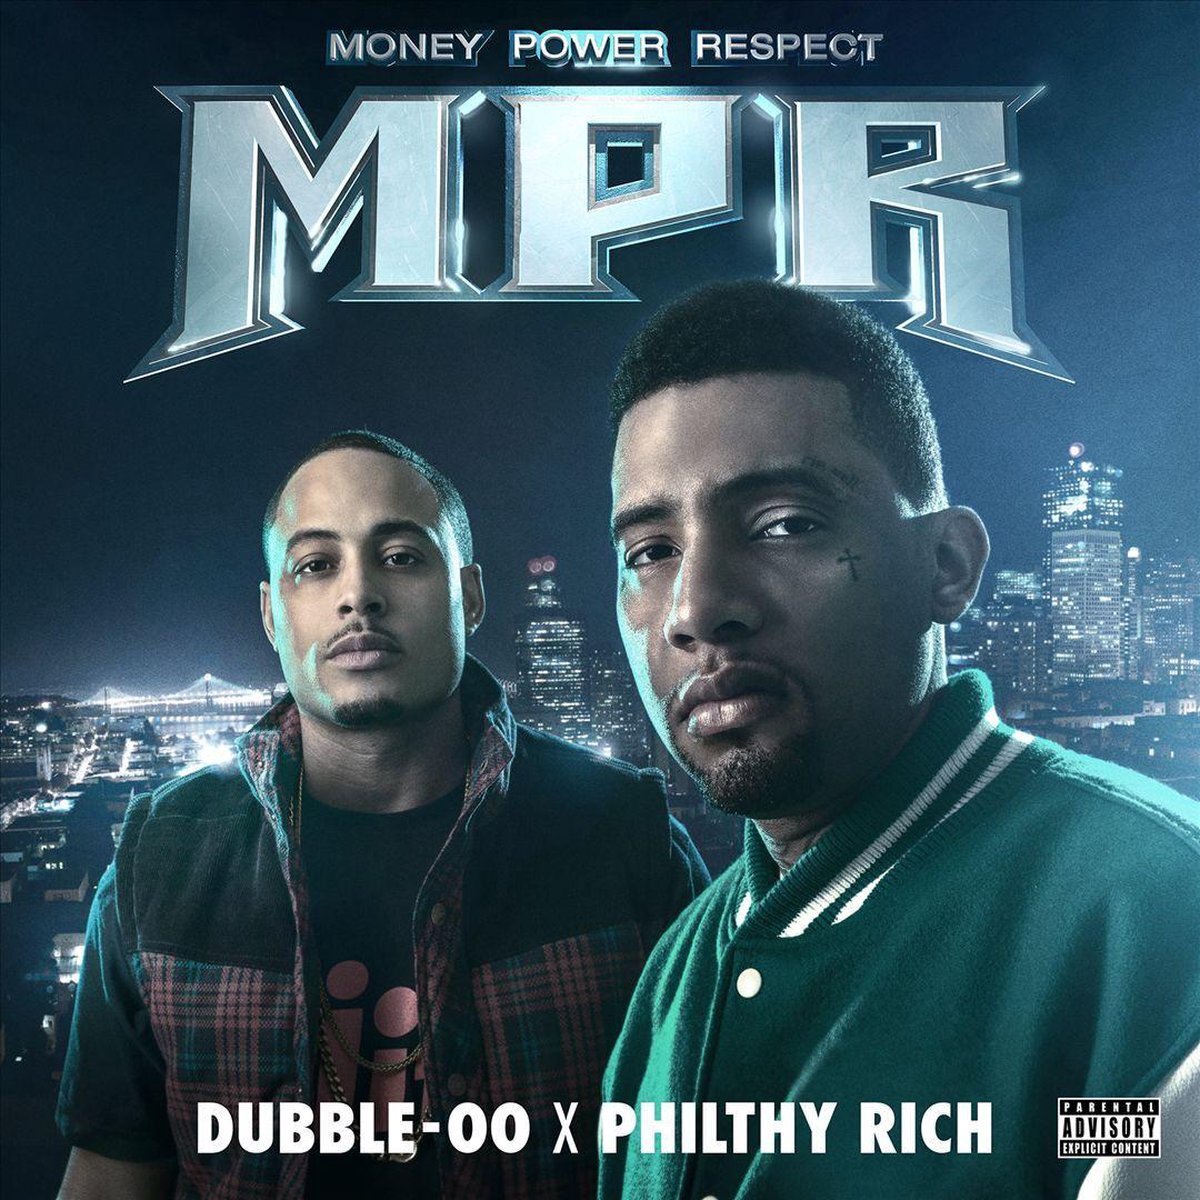 PIAS Nederland Philthy Rich & X Dubble-00 - MPR (Money Power Respect) (CD)